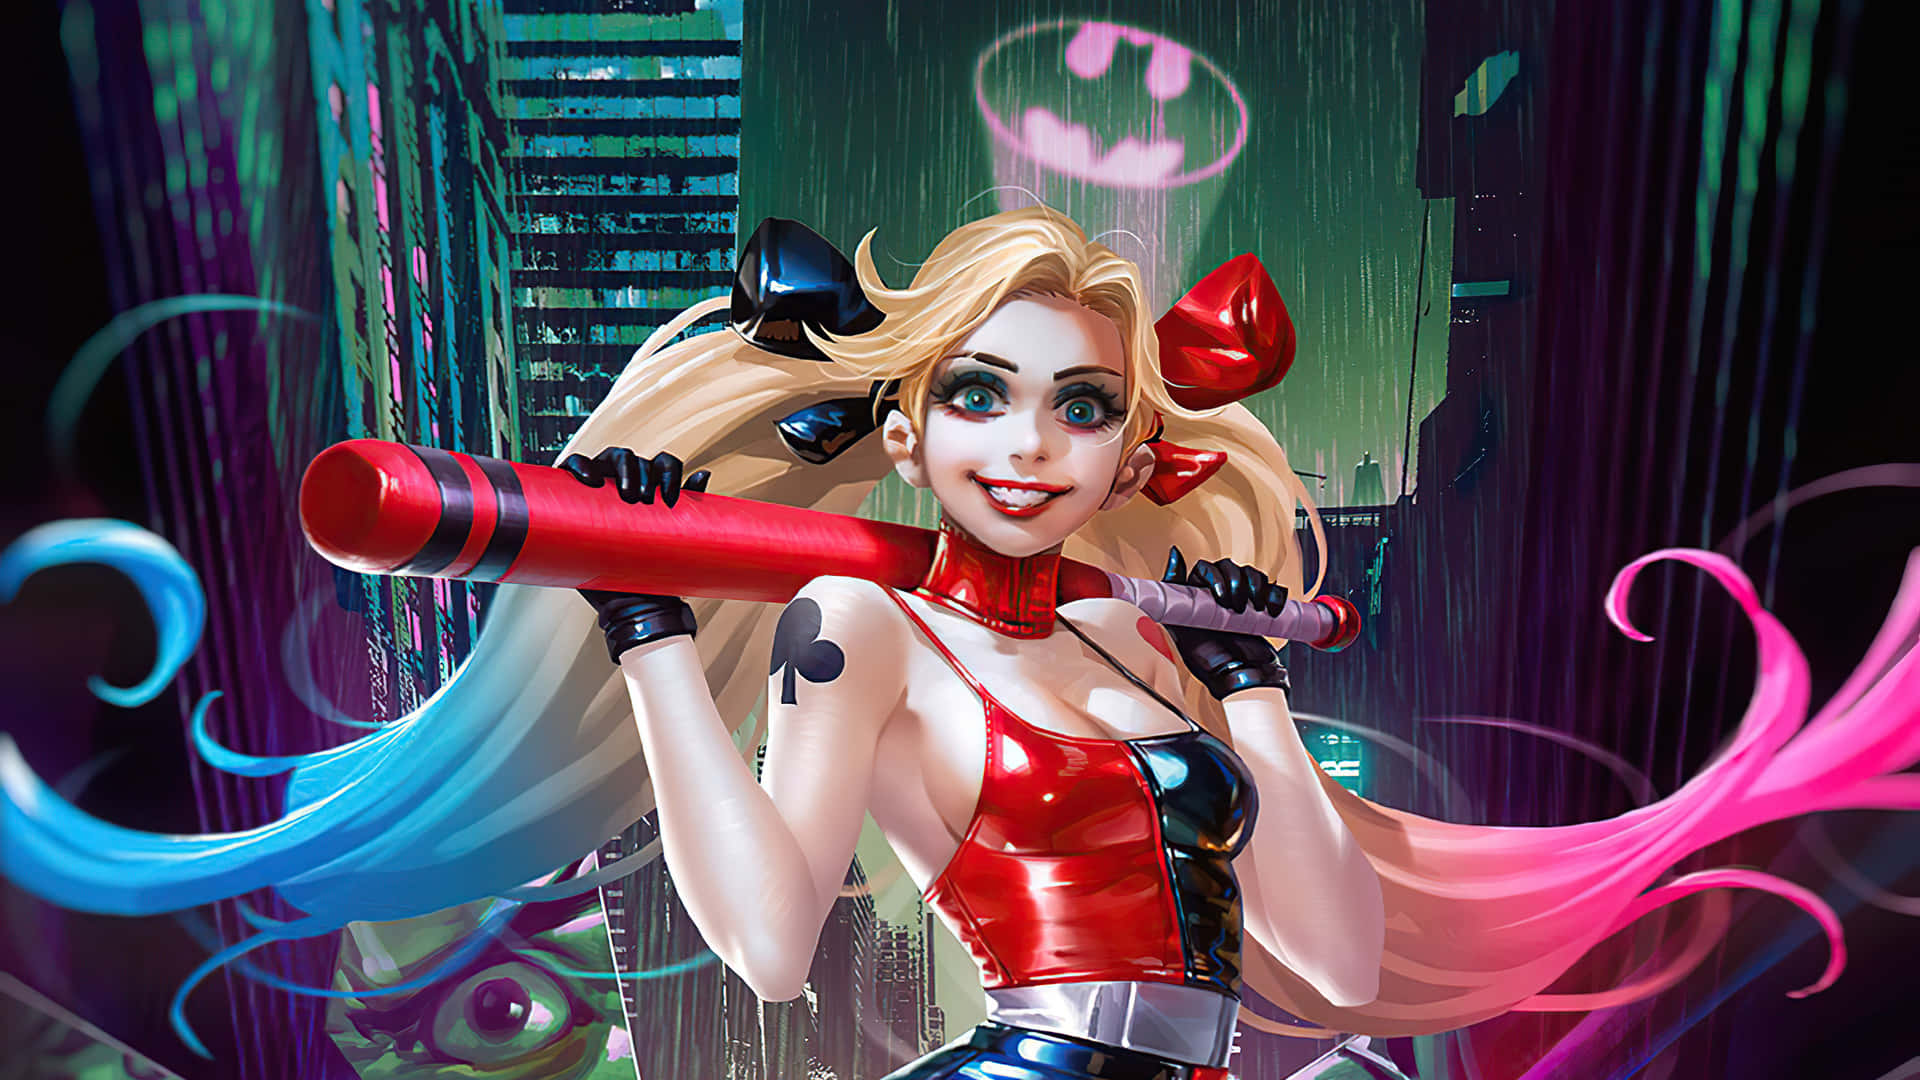 Fondode Pantalla De Harley Quinn Versión Animada De Dibujos Animados.